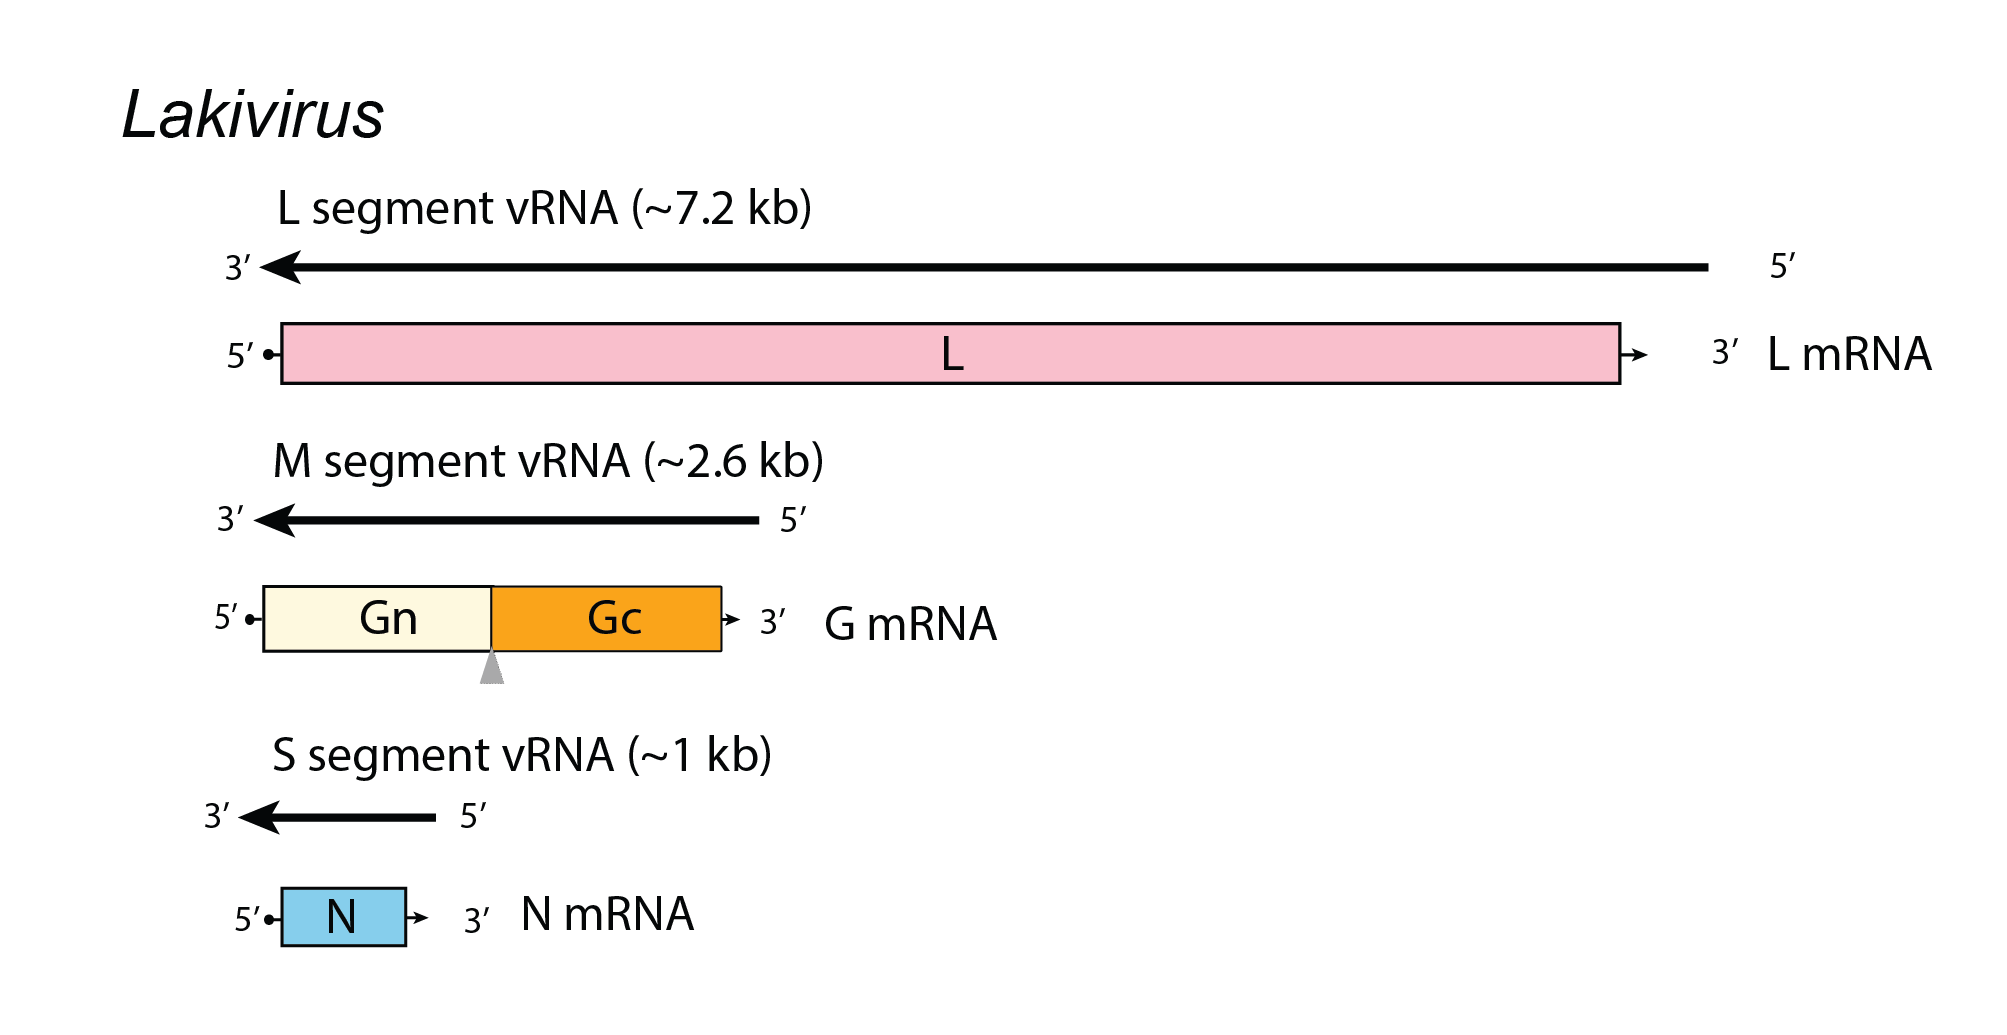 Lakivirus genome organisation